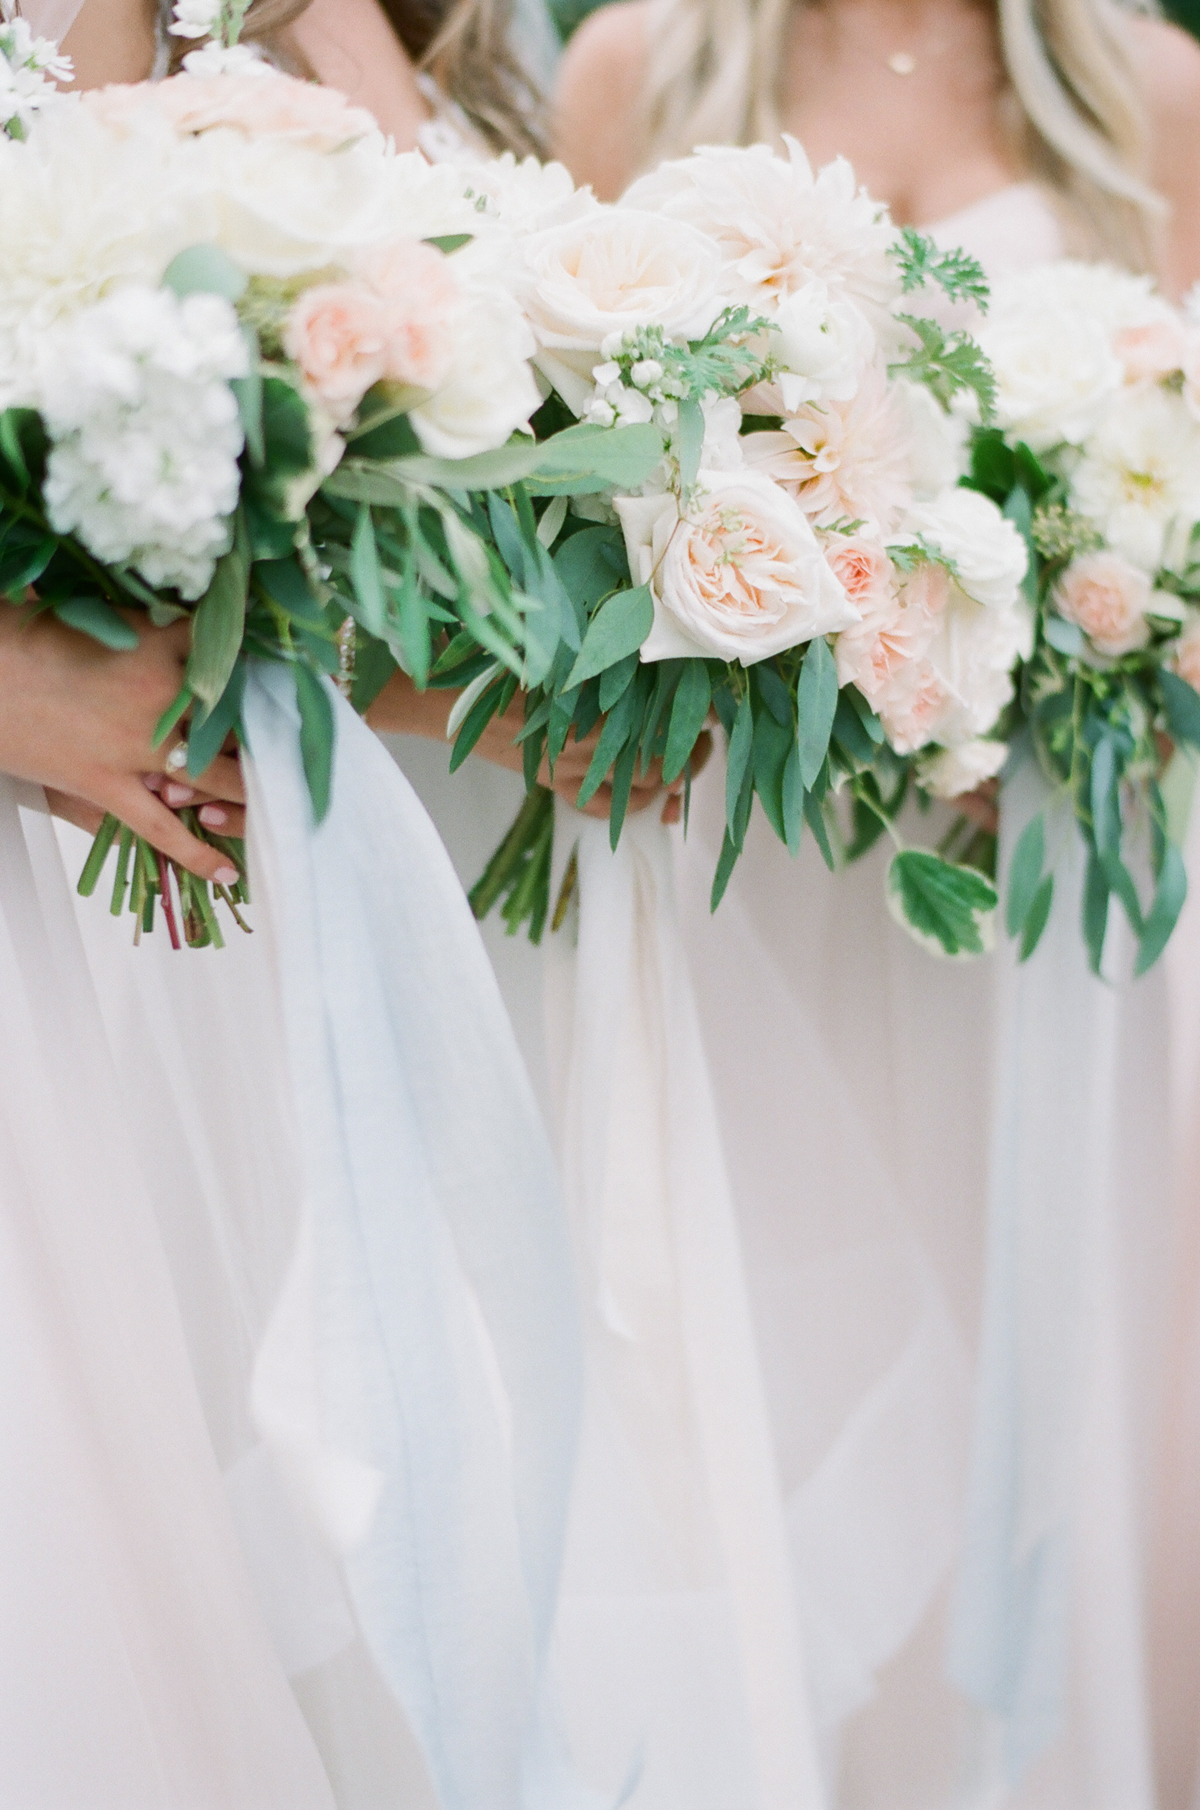 acacia ballroom wedding, cleveland wedding, blush garden wedding, wedding bouquets, wedding flowers, silk ribbon, molly taylor and co, peach wedding flowers